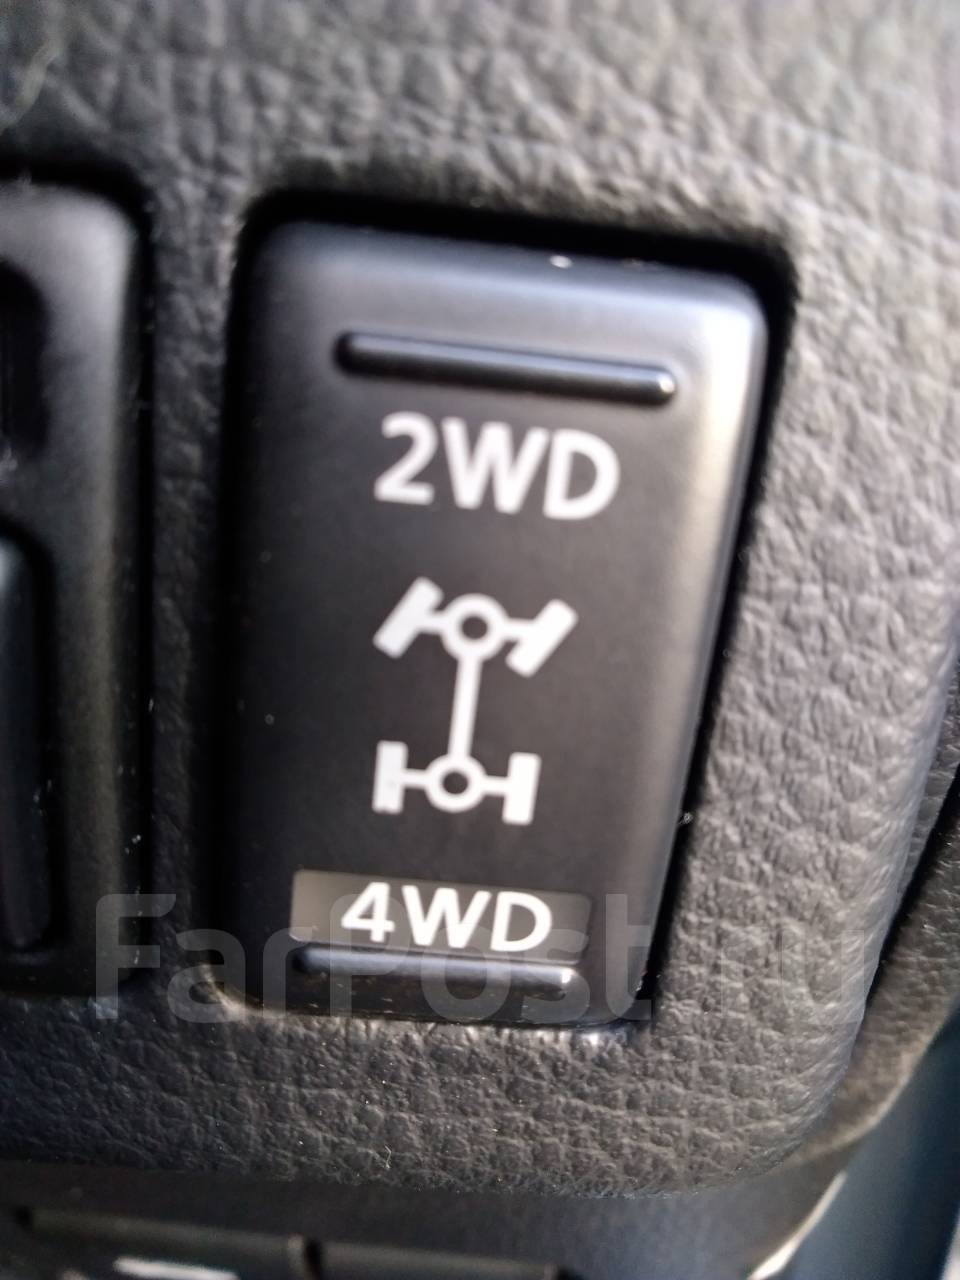 Включи 4 вд 4. Кнопка переключатель 2wd 4wd Nissan Wingroad. Кнопка включения полного привода н5 артикул. Кнопка 2wd 4wd Mitsubishi. Ниссан Марч 4 ВД кнопка.